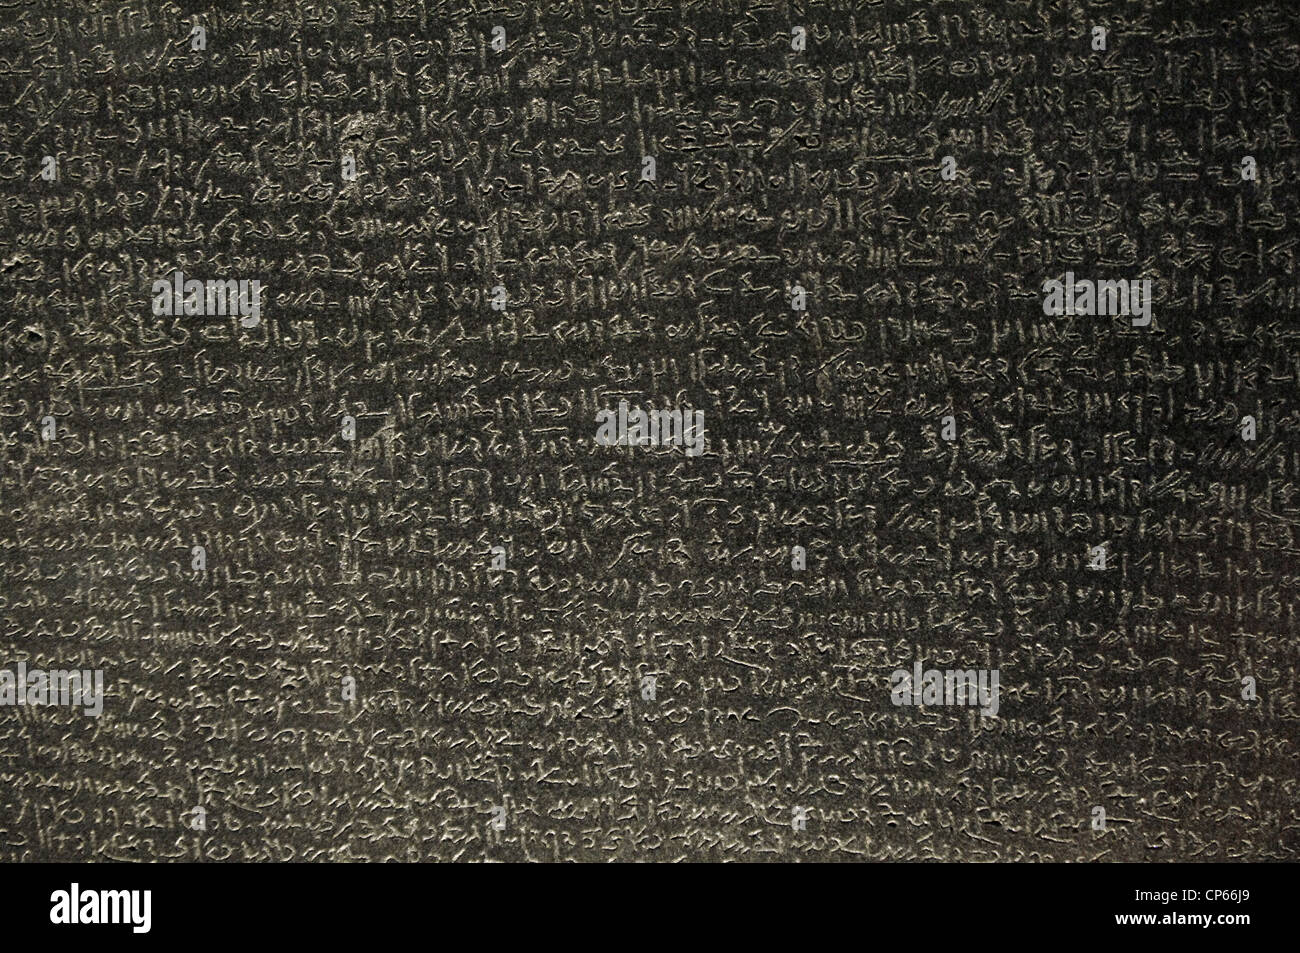 La Rosetta Stone. Epoca tolemaica. 196 BC. Demotic scrittura. Dettaglio. Foto Stock